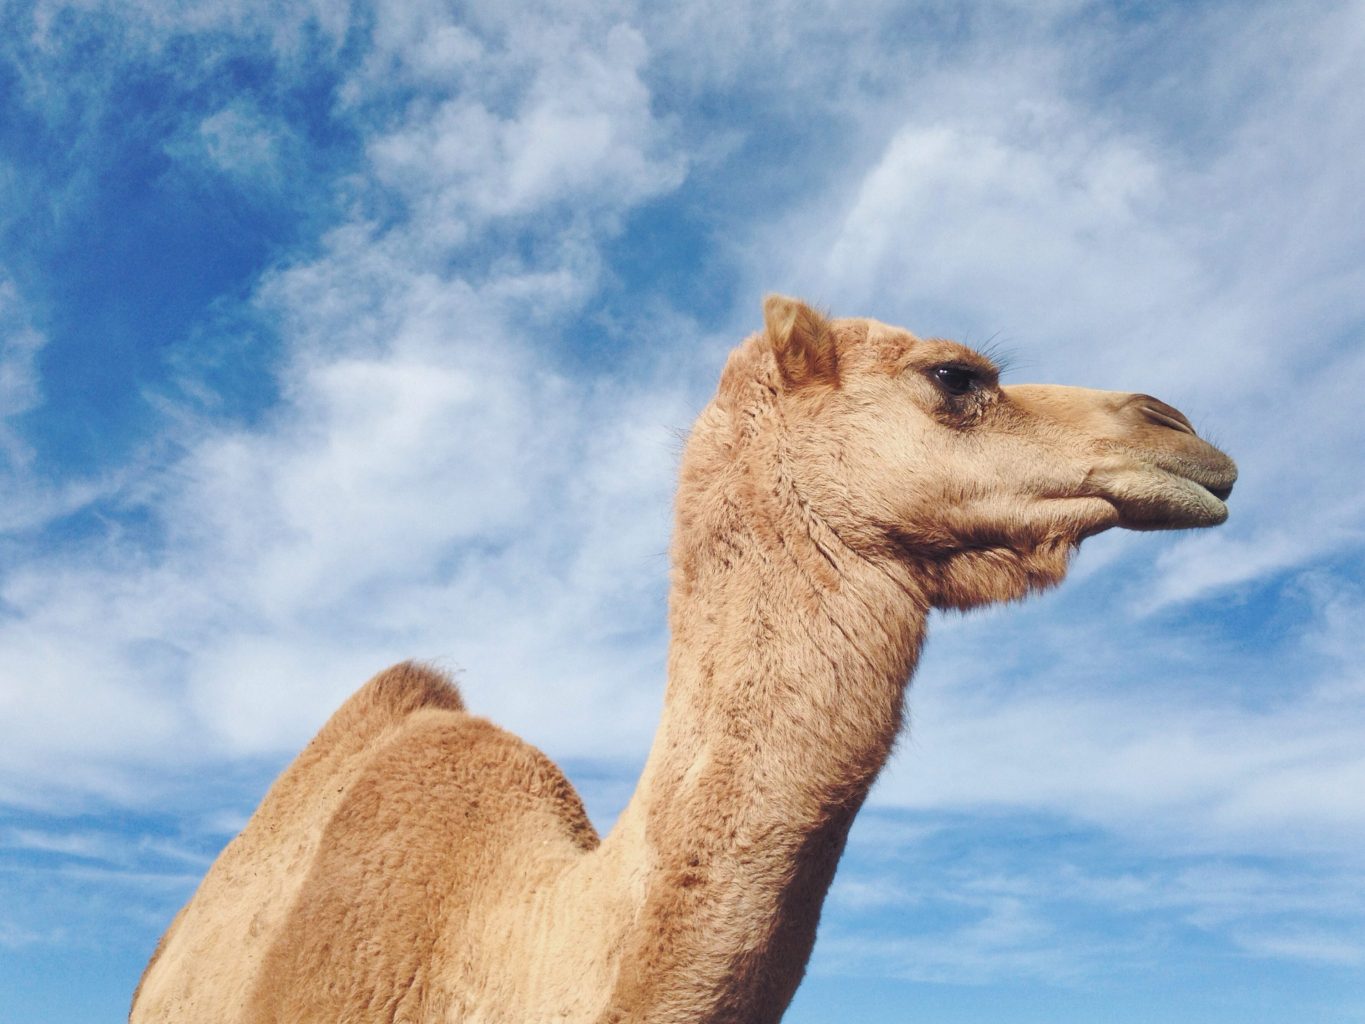 Looking up at Dromedary camel